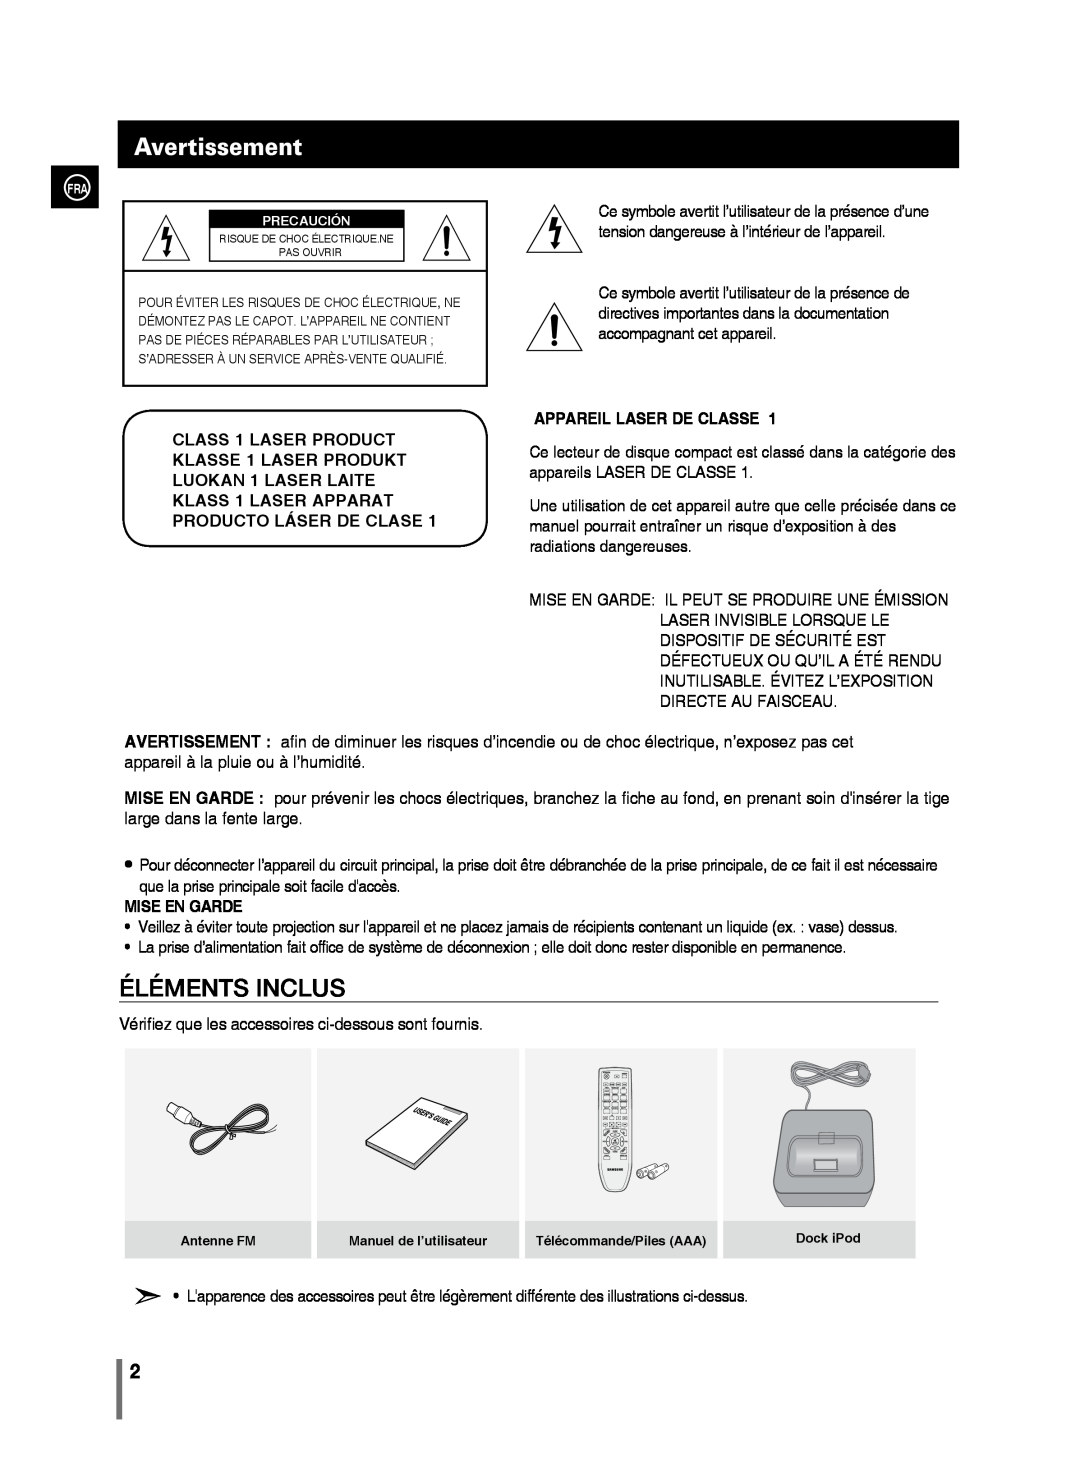 Samsung MM-C430/XEF manual Avertissement, Éléments Inclus, Appareil Laser De Classe, Mise En Garde 